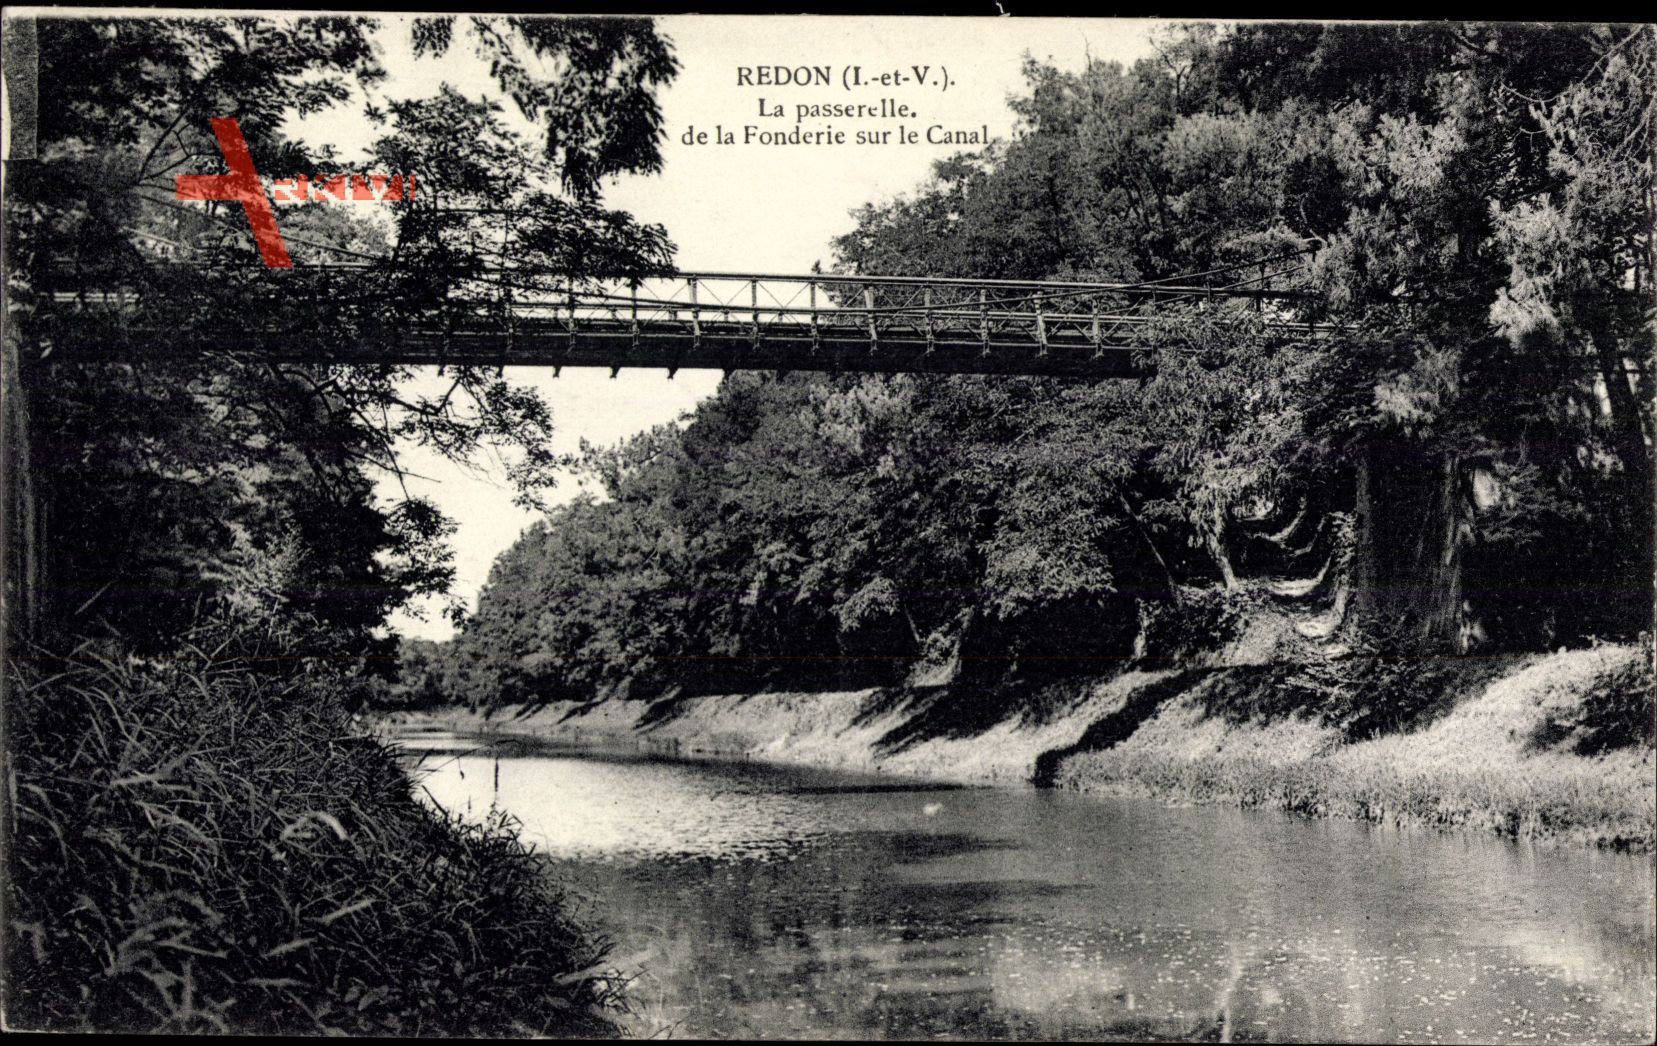 Redon Ille et Vilaine, La passerelle de la Fonderie sur le Canal, Brücke